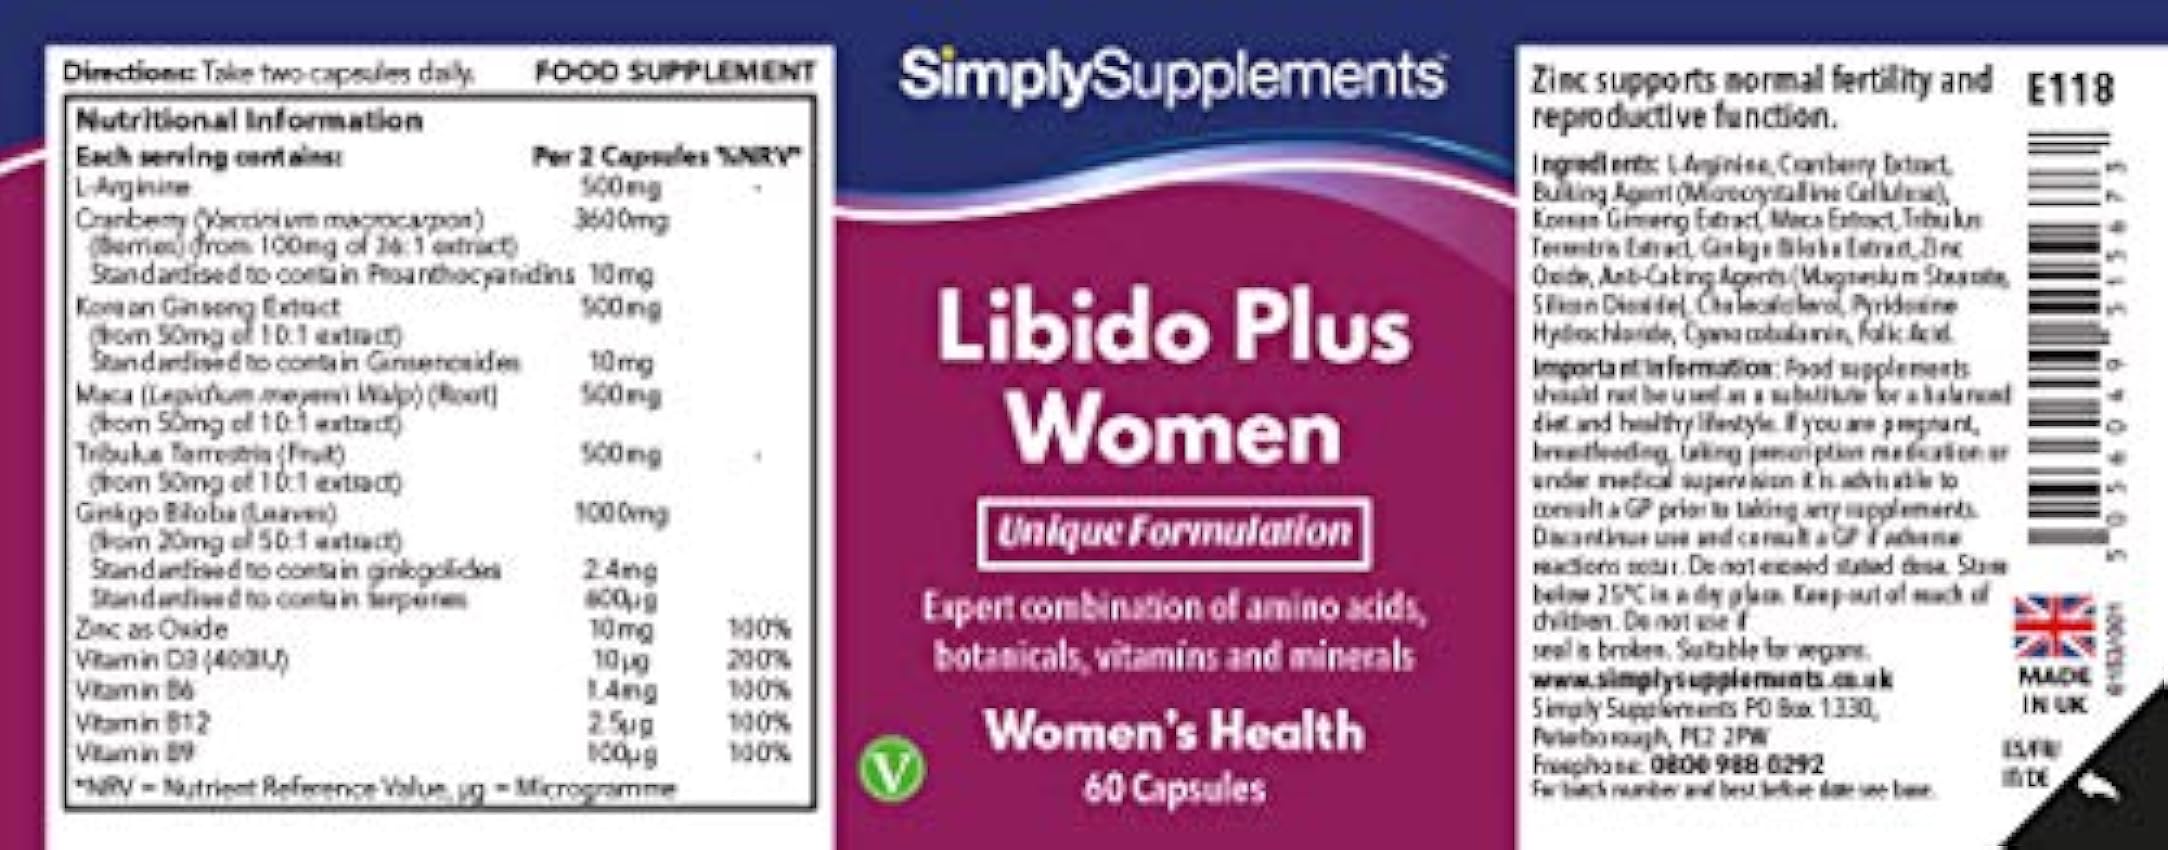 Libido Plus para Mujeres - Con raíz de maca y tribulus terrestris - 60 Cápsulas - Apto para veganos - SimplySupplements j3EtkjTv